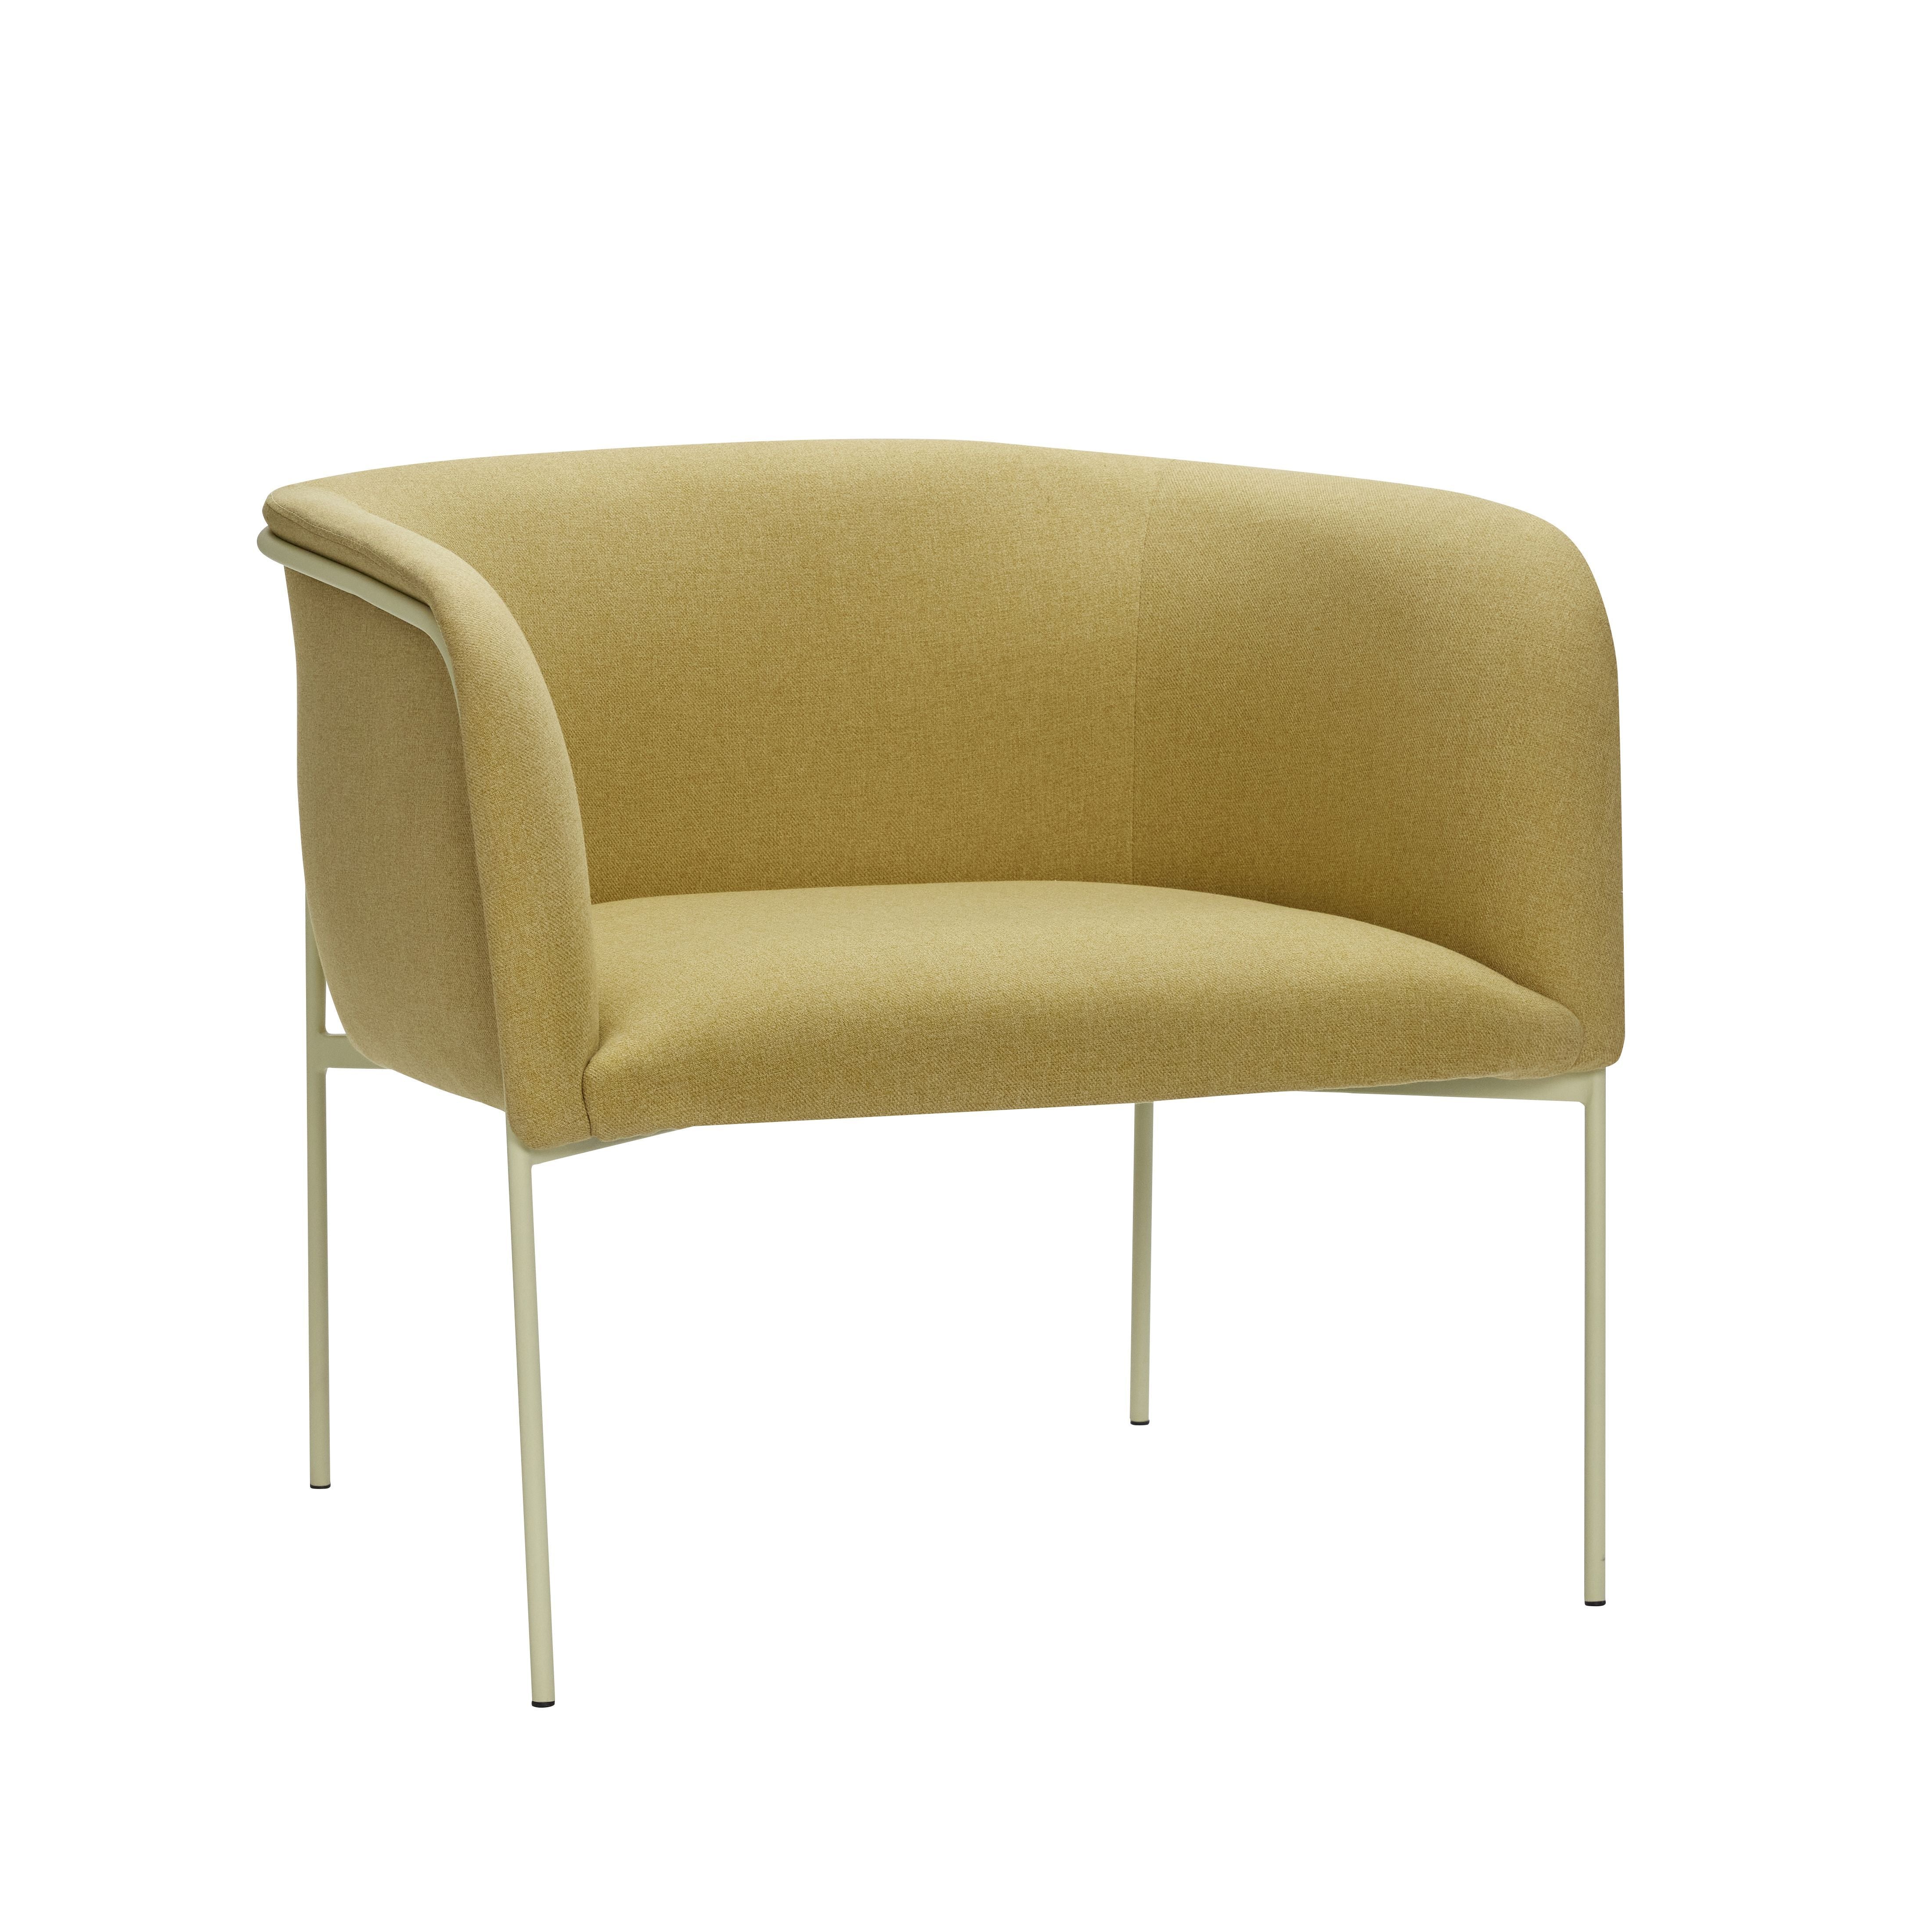 Hübsch Eyrie Lounge Chair Polyester/Metal Yellow/Light Green